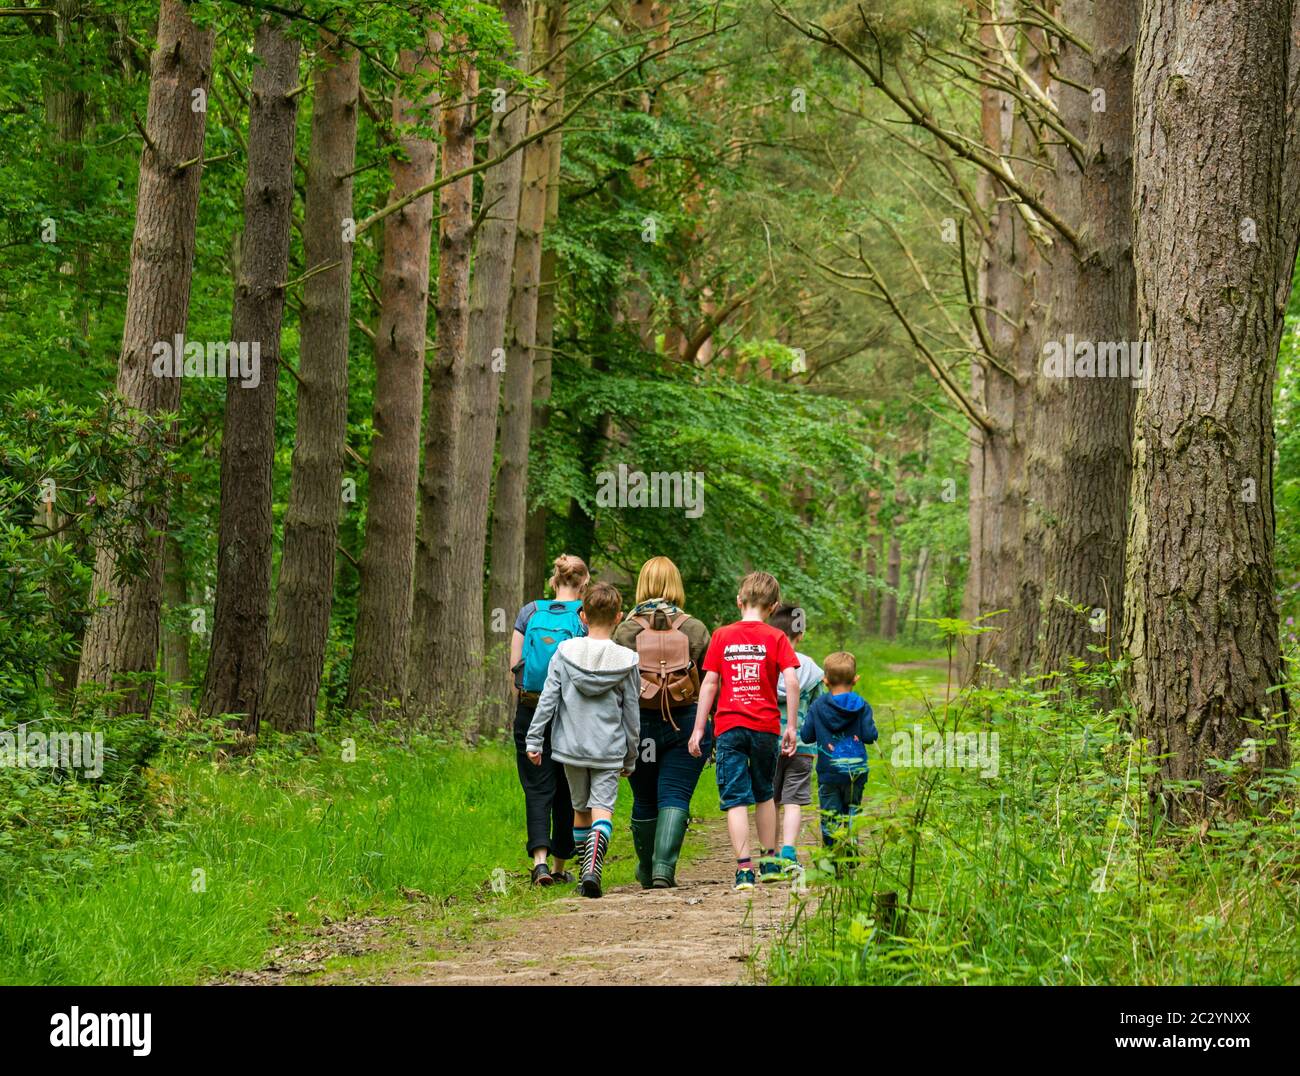 Madres y niños caminando por senderos forestales en bosques con pinos, Binning Wood, East Lothian, Escocia, Reino Unido Foto de stock